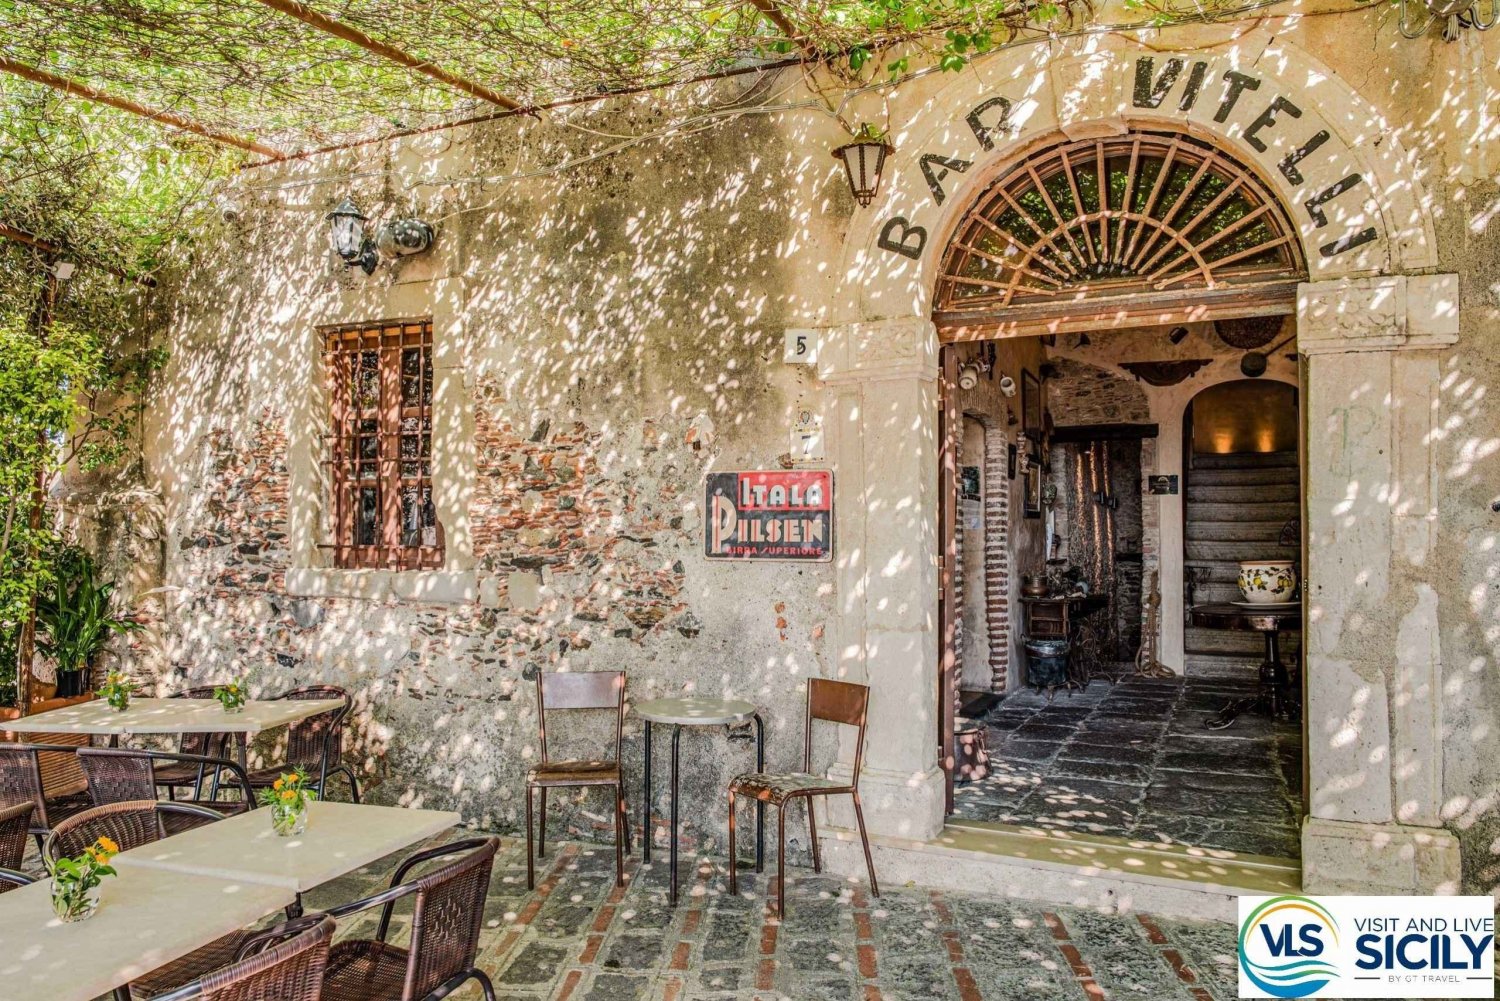 Au départ de Taormine : la tournée du Parrain